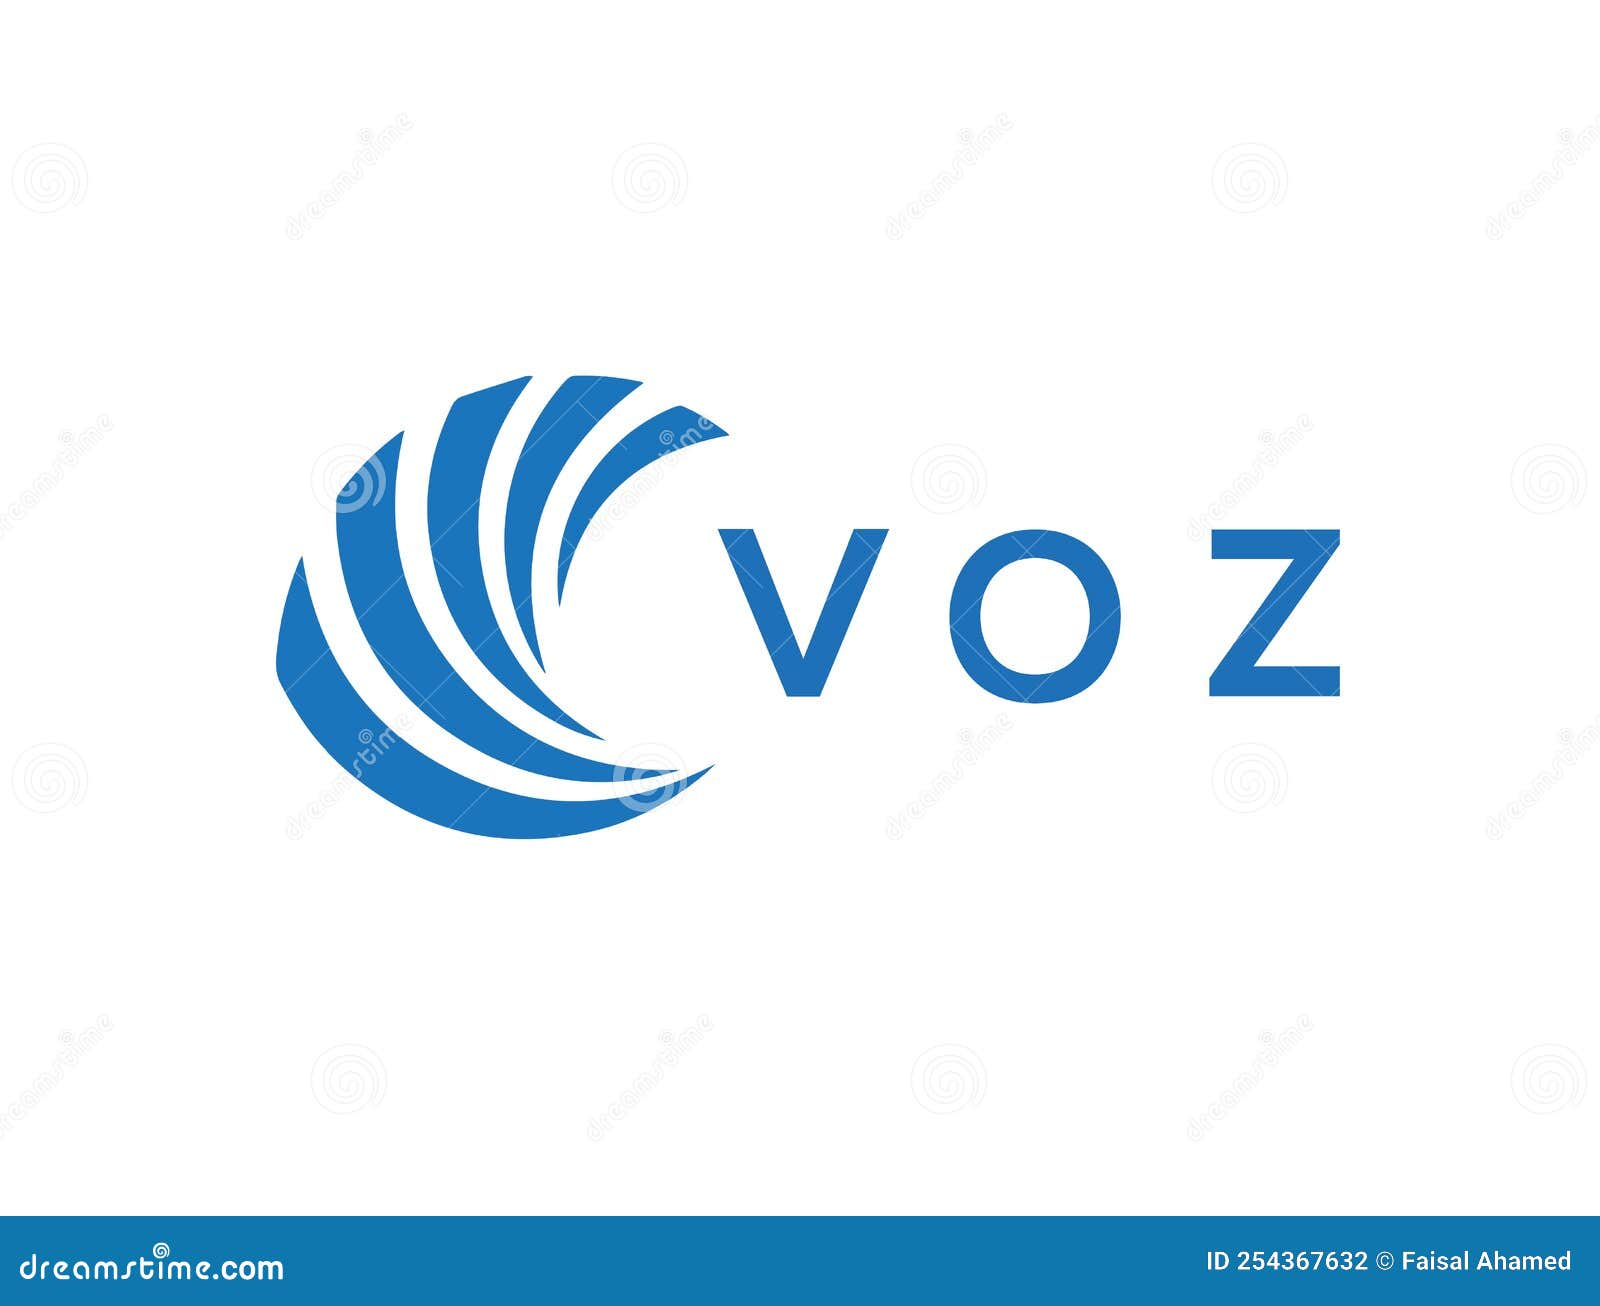 voz letter logo  on white background. voz creative circle letter logo